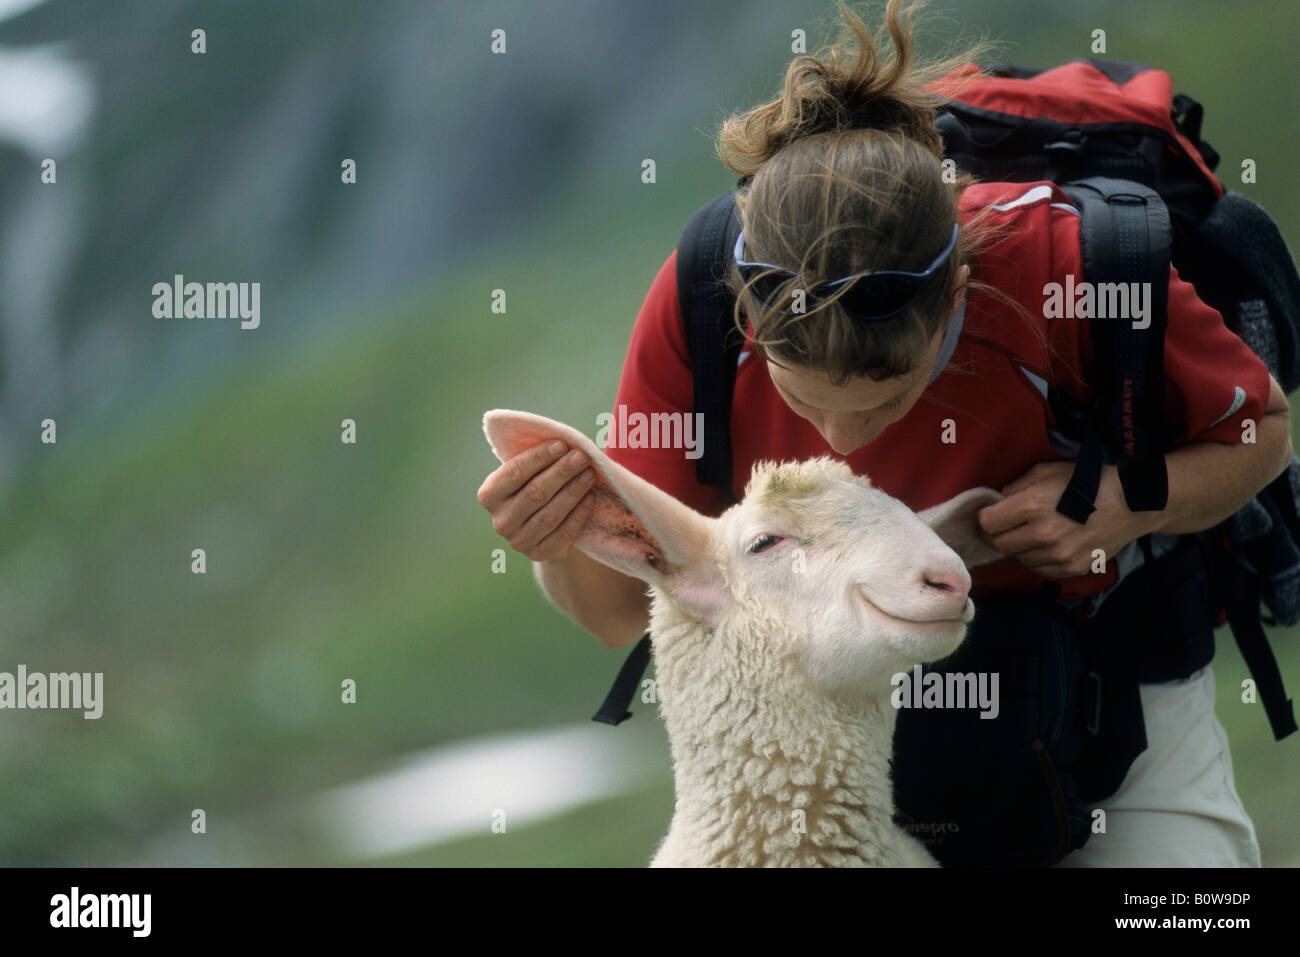 Frau spielt mit einem fröhlich grinsende Schaf, Bildbearbeitung Stockfoto